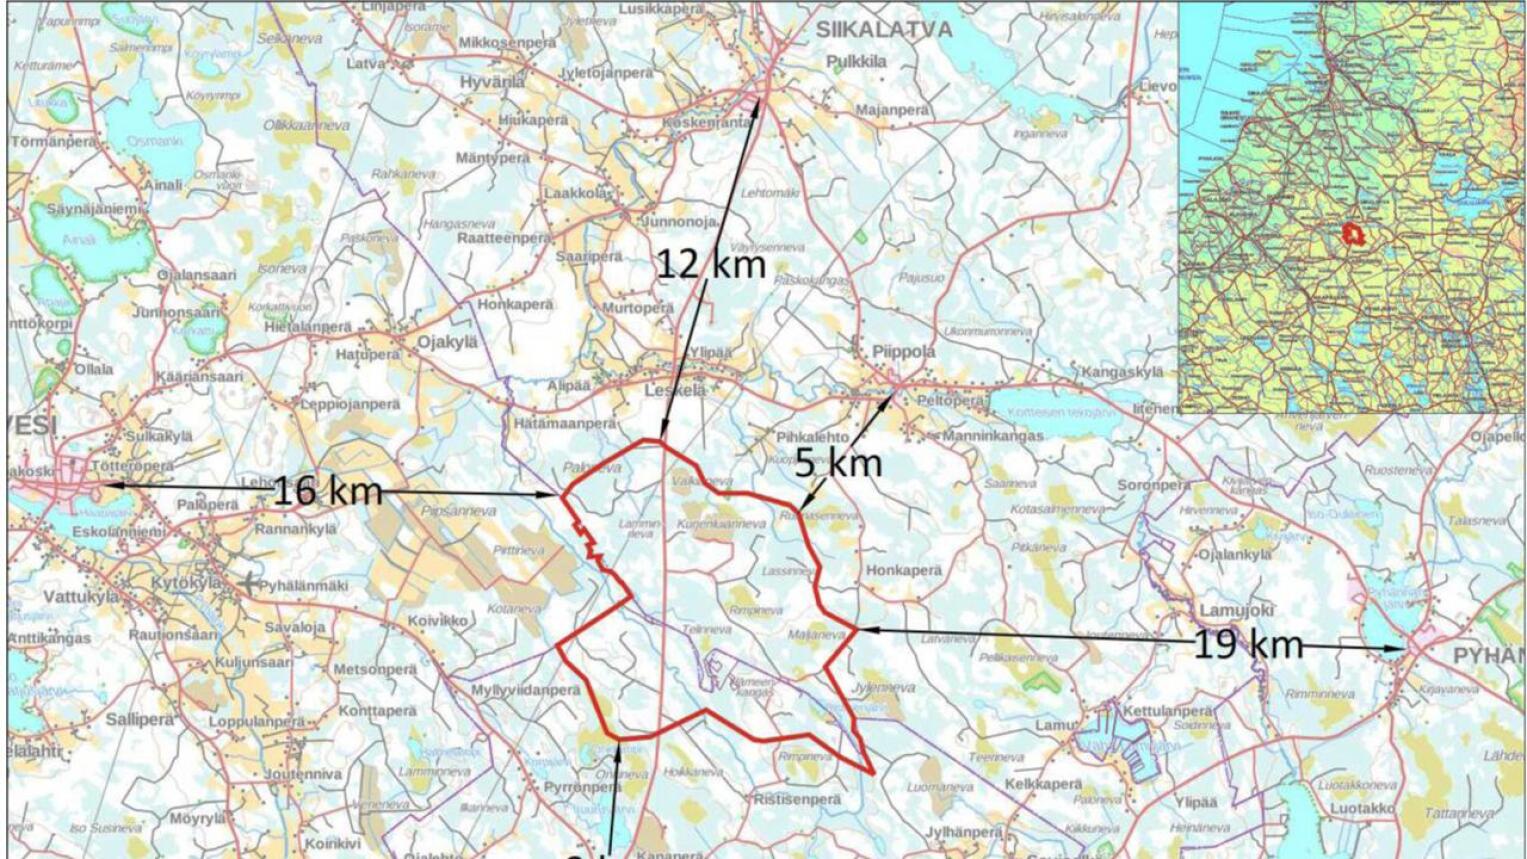 Hankealue sijoittuu Siikalatvan Piippolan taajama-alueesta noin 5 – 6 kilometriä ja Pulkkilan taajama-alueesta noin 12 – 14 kilometriä etelään, ja Kärsämäen keskustasta noin 9 – 10 kilometriä pohjoiseen. Hankealue rajoittuu osittain Haapaveden kaupungin rajaan. Etäisyyttä hankealueen länsipuolella sijaitsevaan Haapaveden keskustaan on lähimmillään noin 16 kilometriä ja itäpuolella sijaitsevaan Pyhännän keskustaan noin 19 kilometriä.